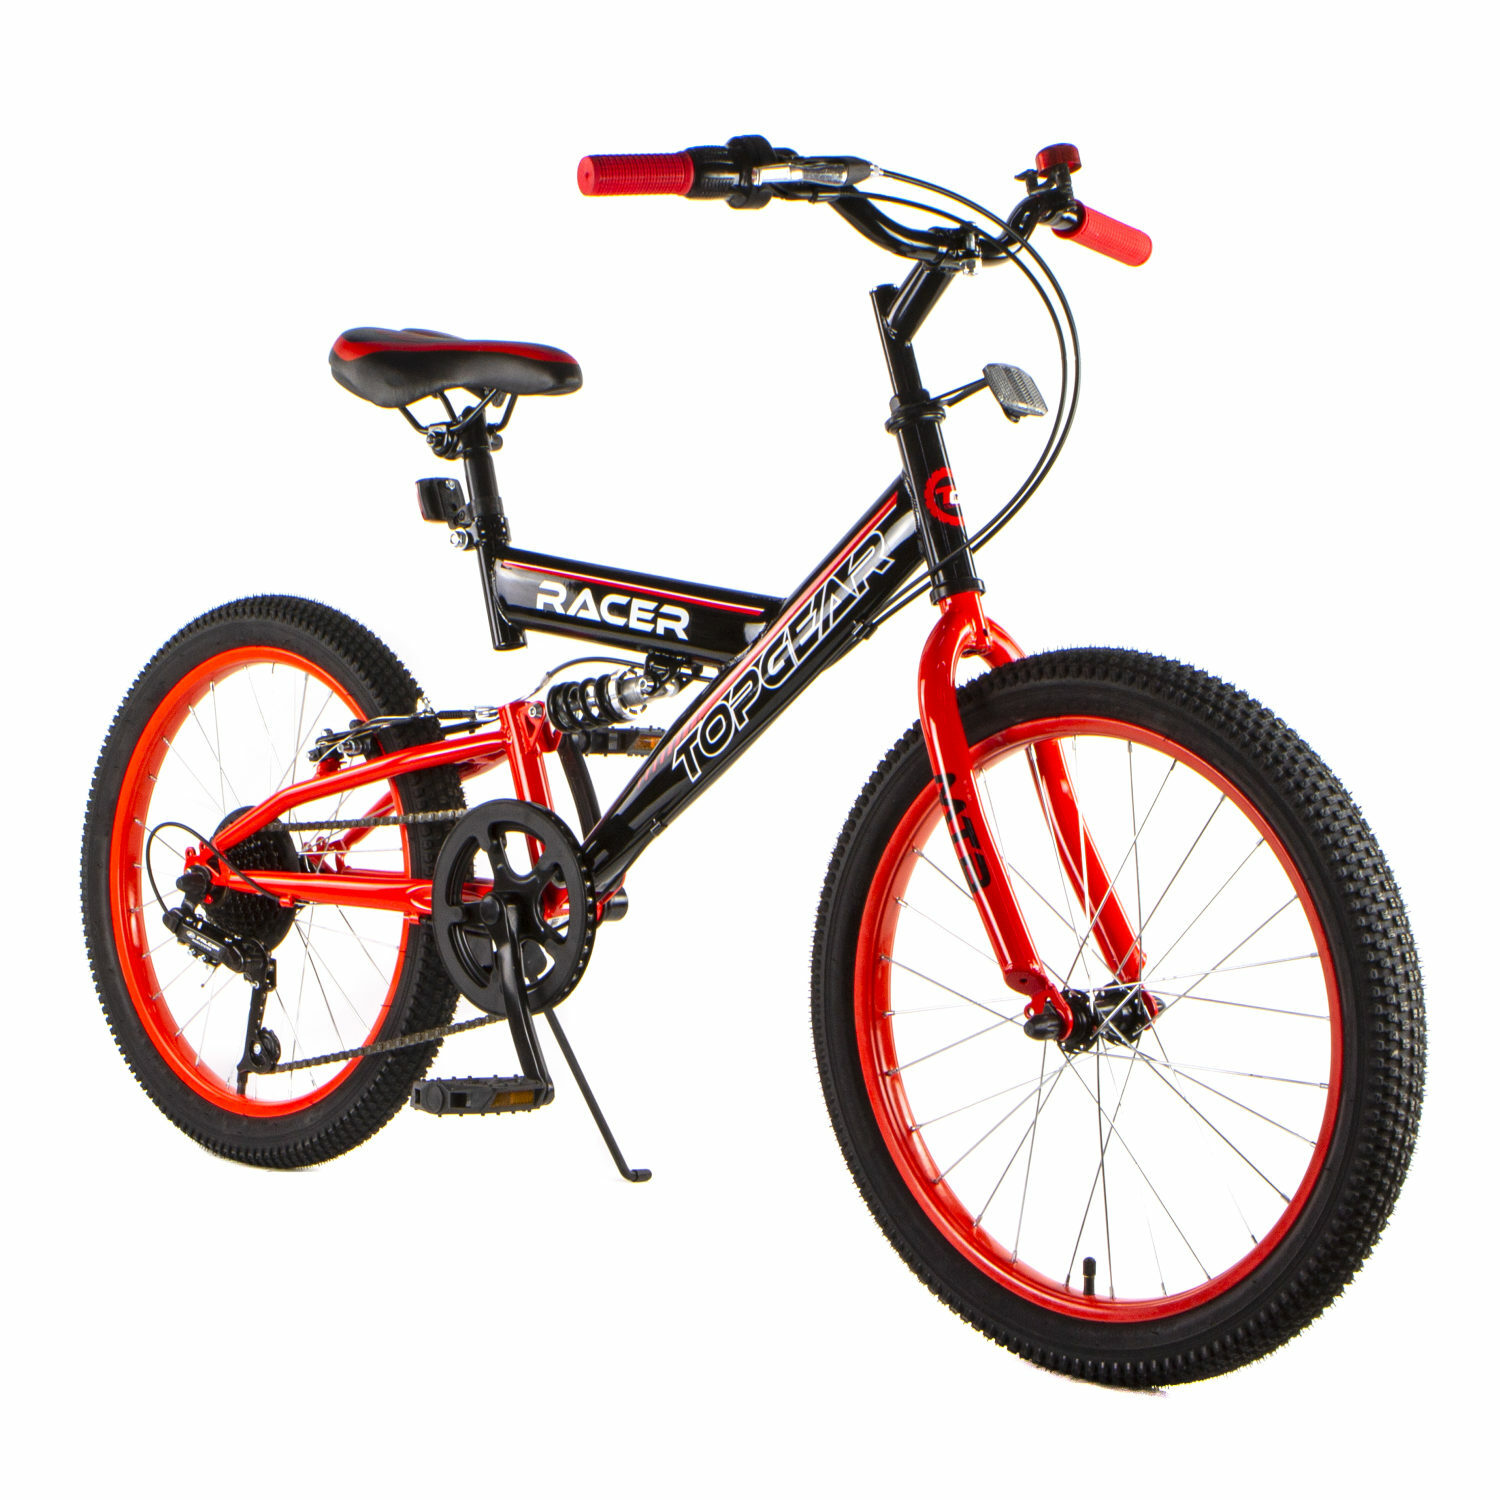 Велосипед TOPGEAR Racer 20 дюймов двухколесный городской с амортизатором тормозом V-brake красный - фото 2